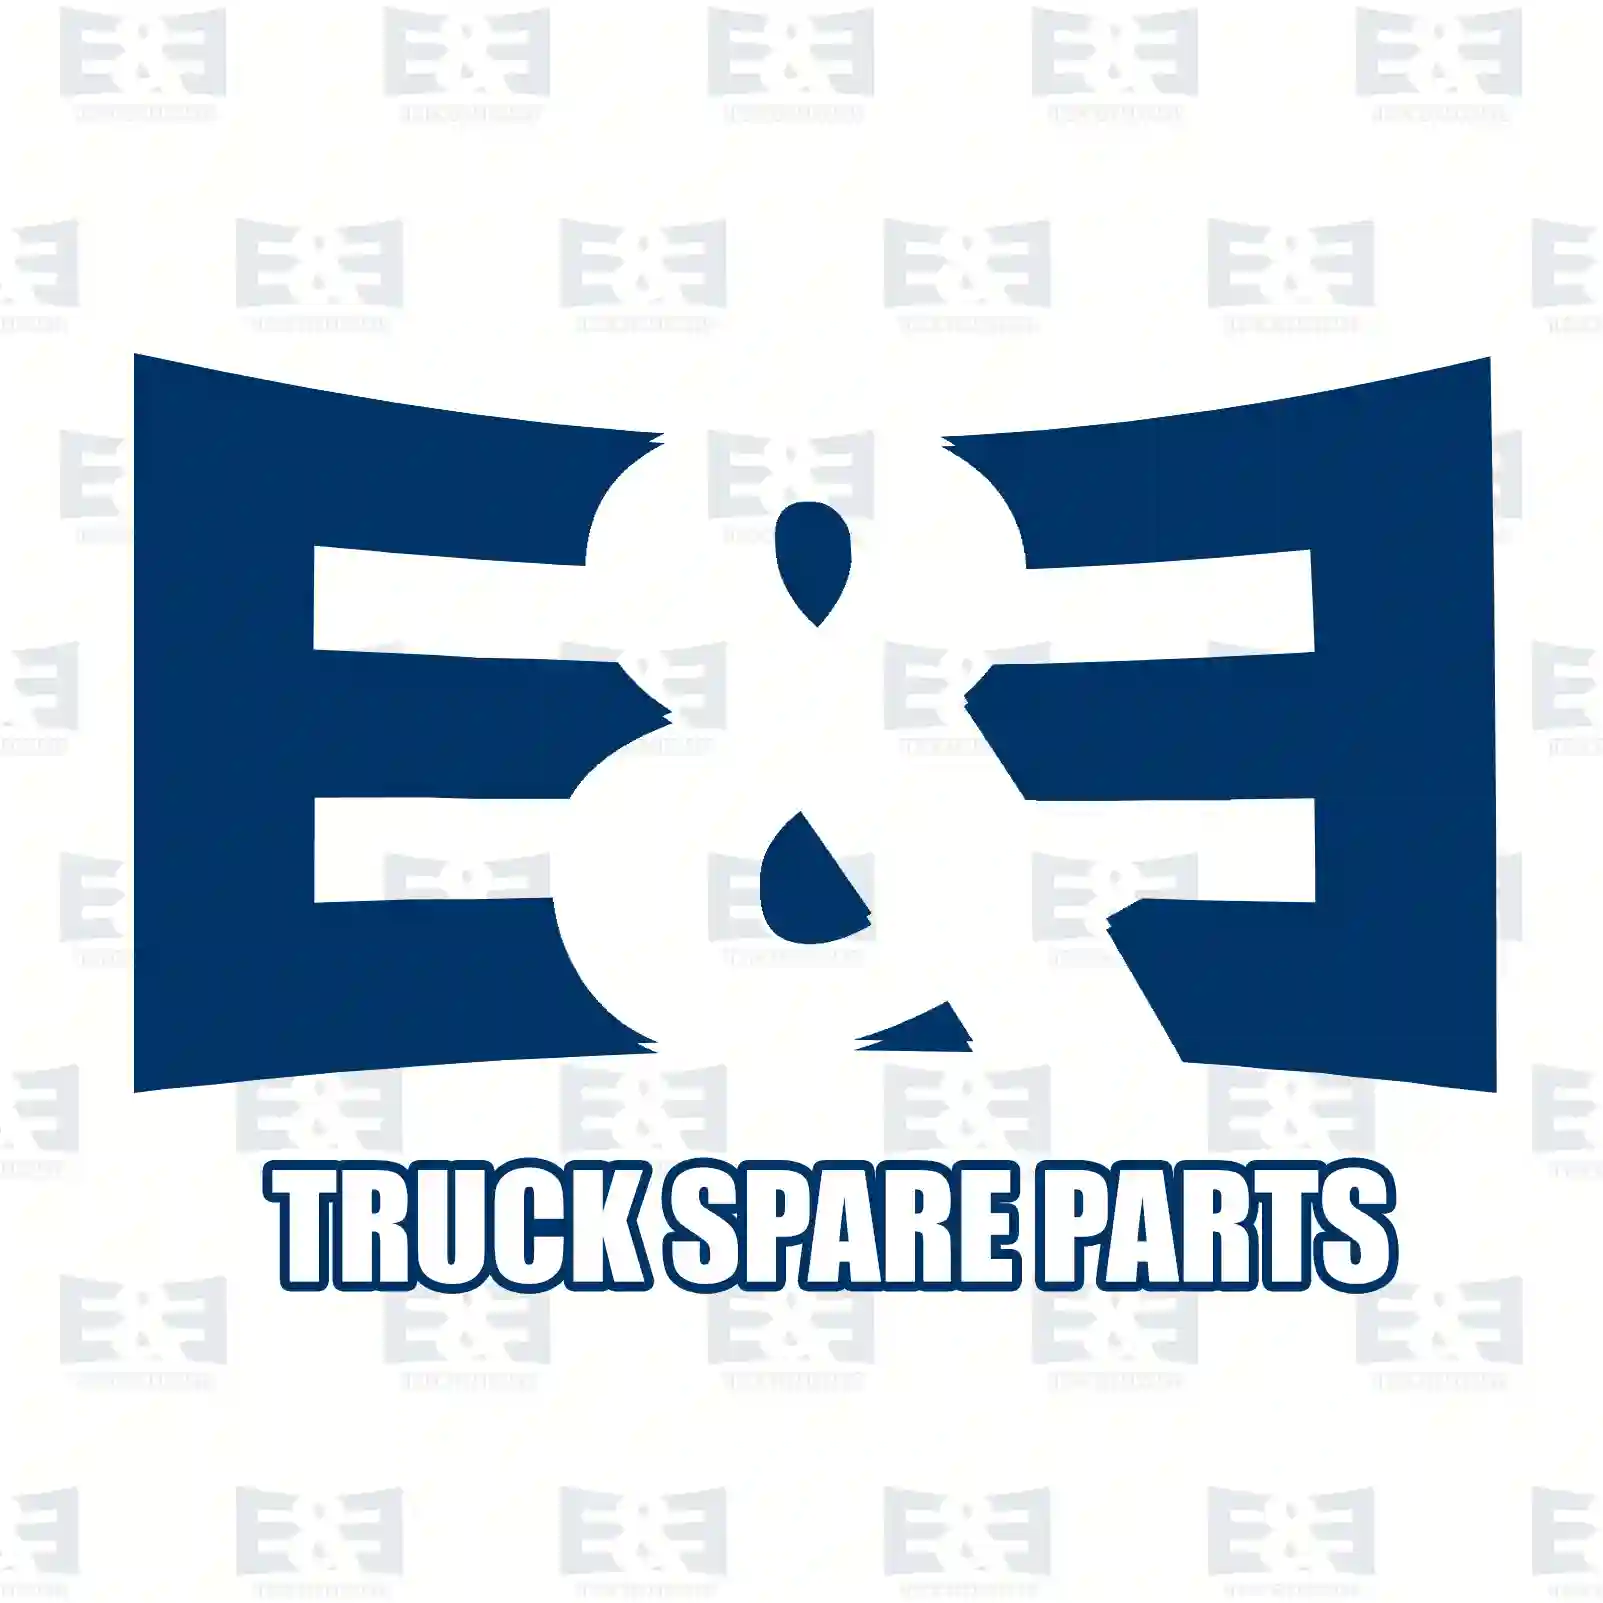 O-ring, 2E2285424, 06569303611, 81059020001, 82965010207, 2V5407641A ||  2E2285424 E&E Truck Spare Parts | Truck Spare Parts, Auotomotive Spare Parts O-ring, 2E2285424, 06569303611, 81059020001, 82965010207, 2V5407641A ||  2E2285424 E&E Truck Spare Parts | Truck Spare Parts, Auotomotive Spare Parts